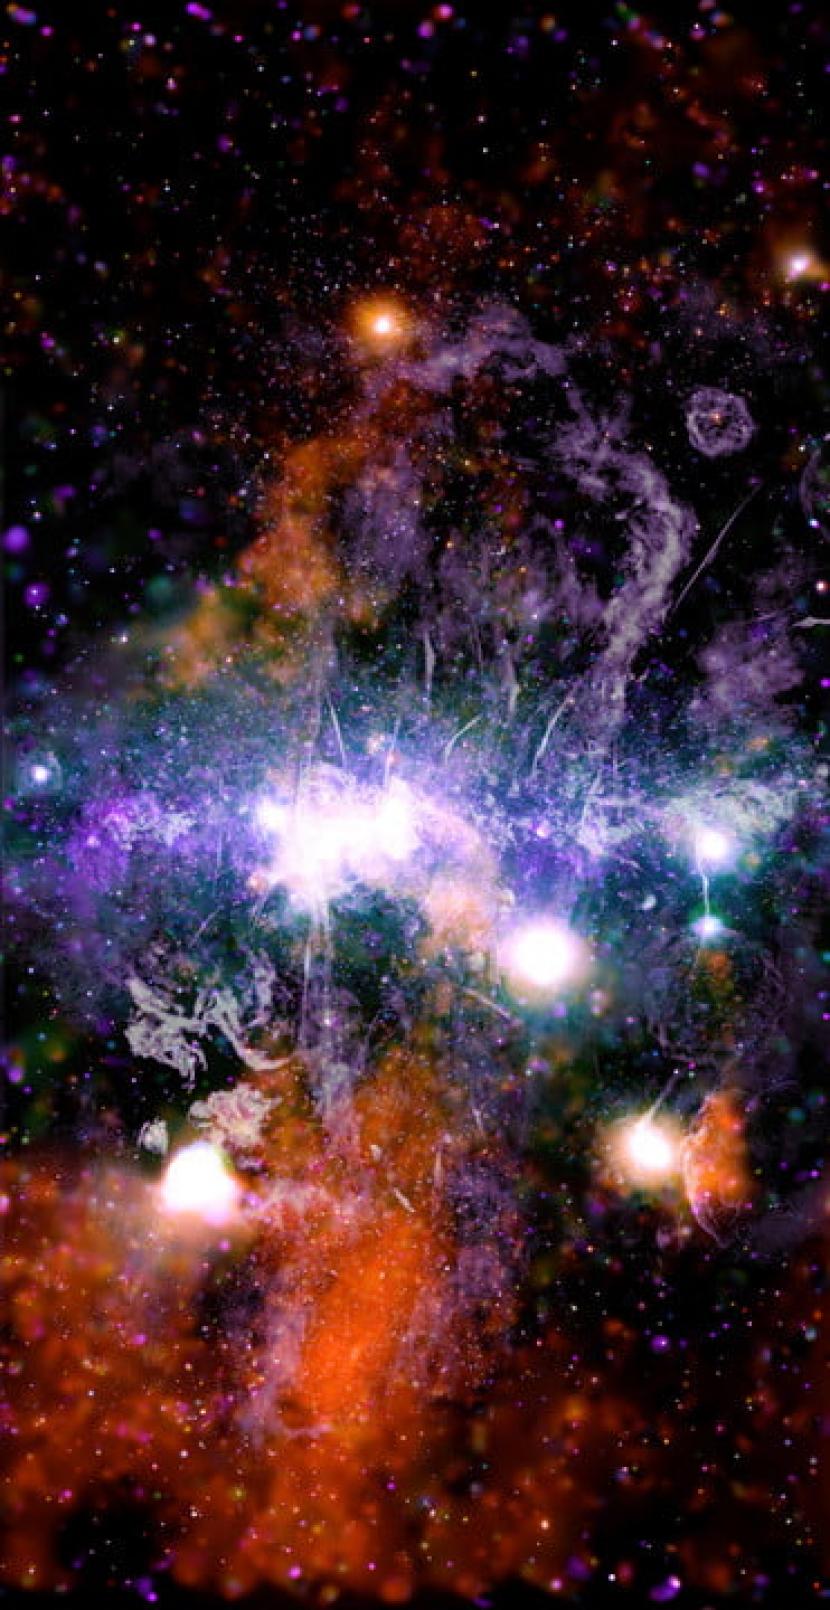  Gambar yang diungkap dengan panjang gelombang sinar-X dan radio NASA itu menangkap wilayah kacau dari benang gas.